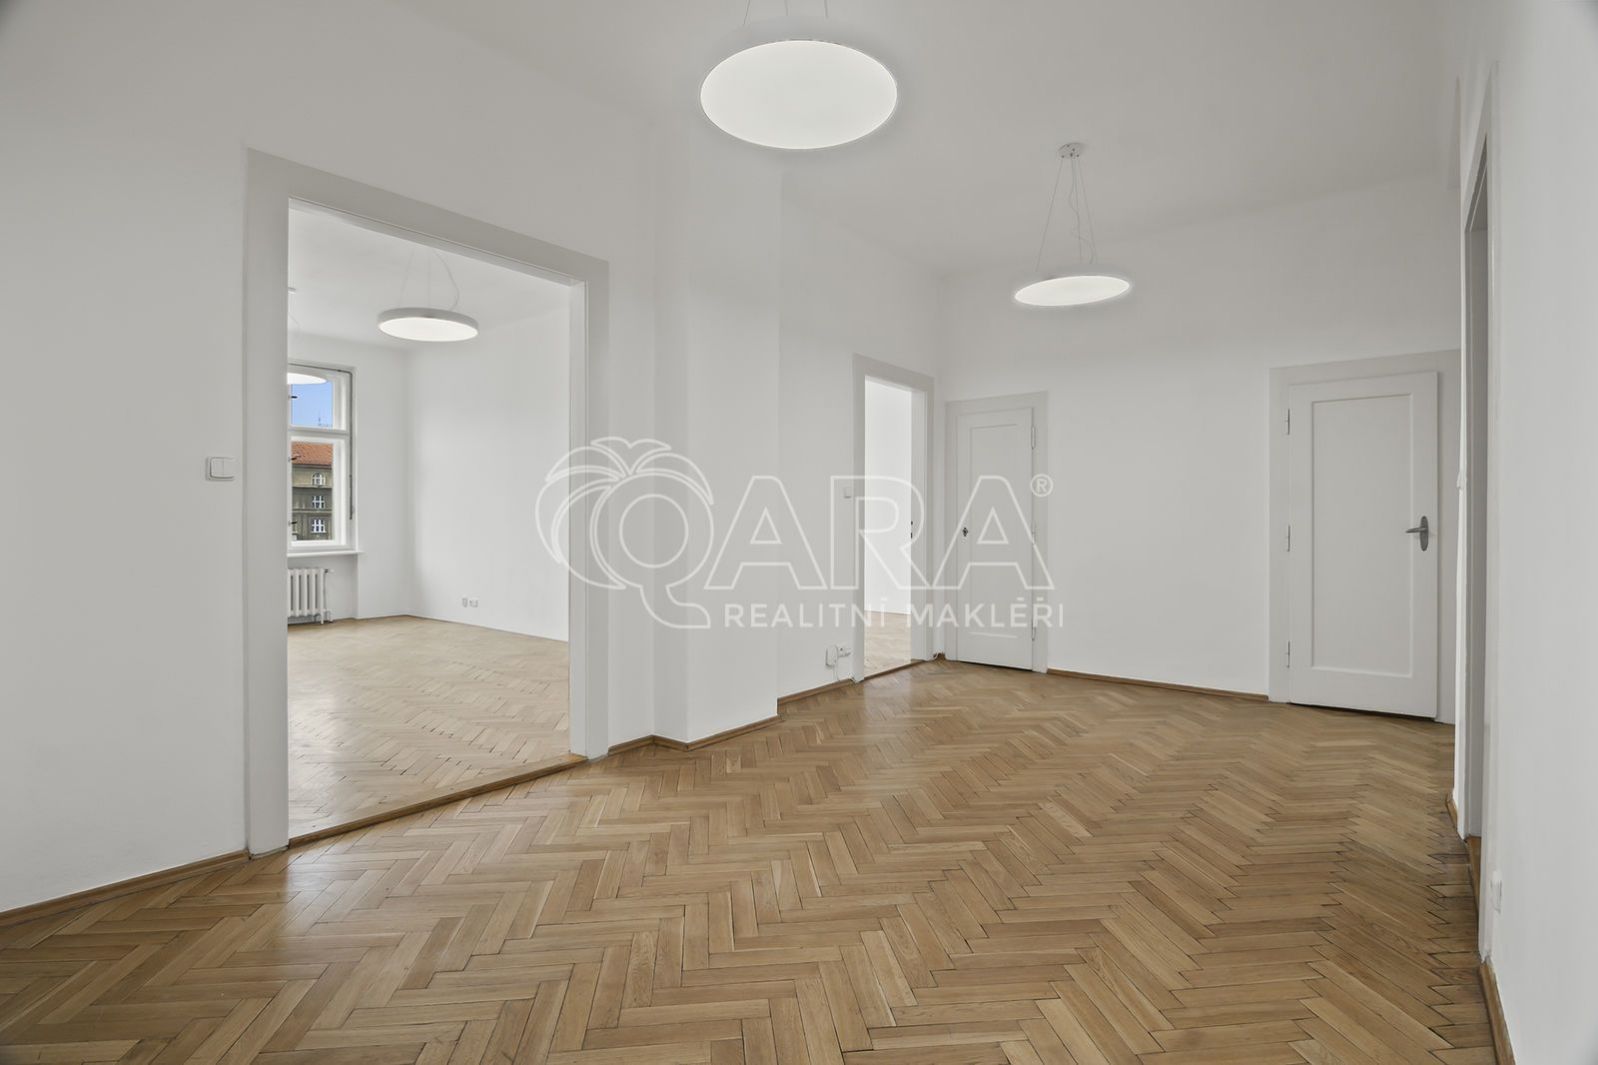 Pronájem kanceláře 120 m2 v činžovním domě na Vinohradech, kousek od metra Flora, obrázek č. 1